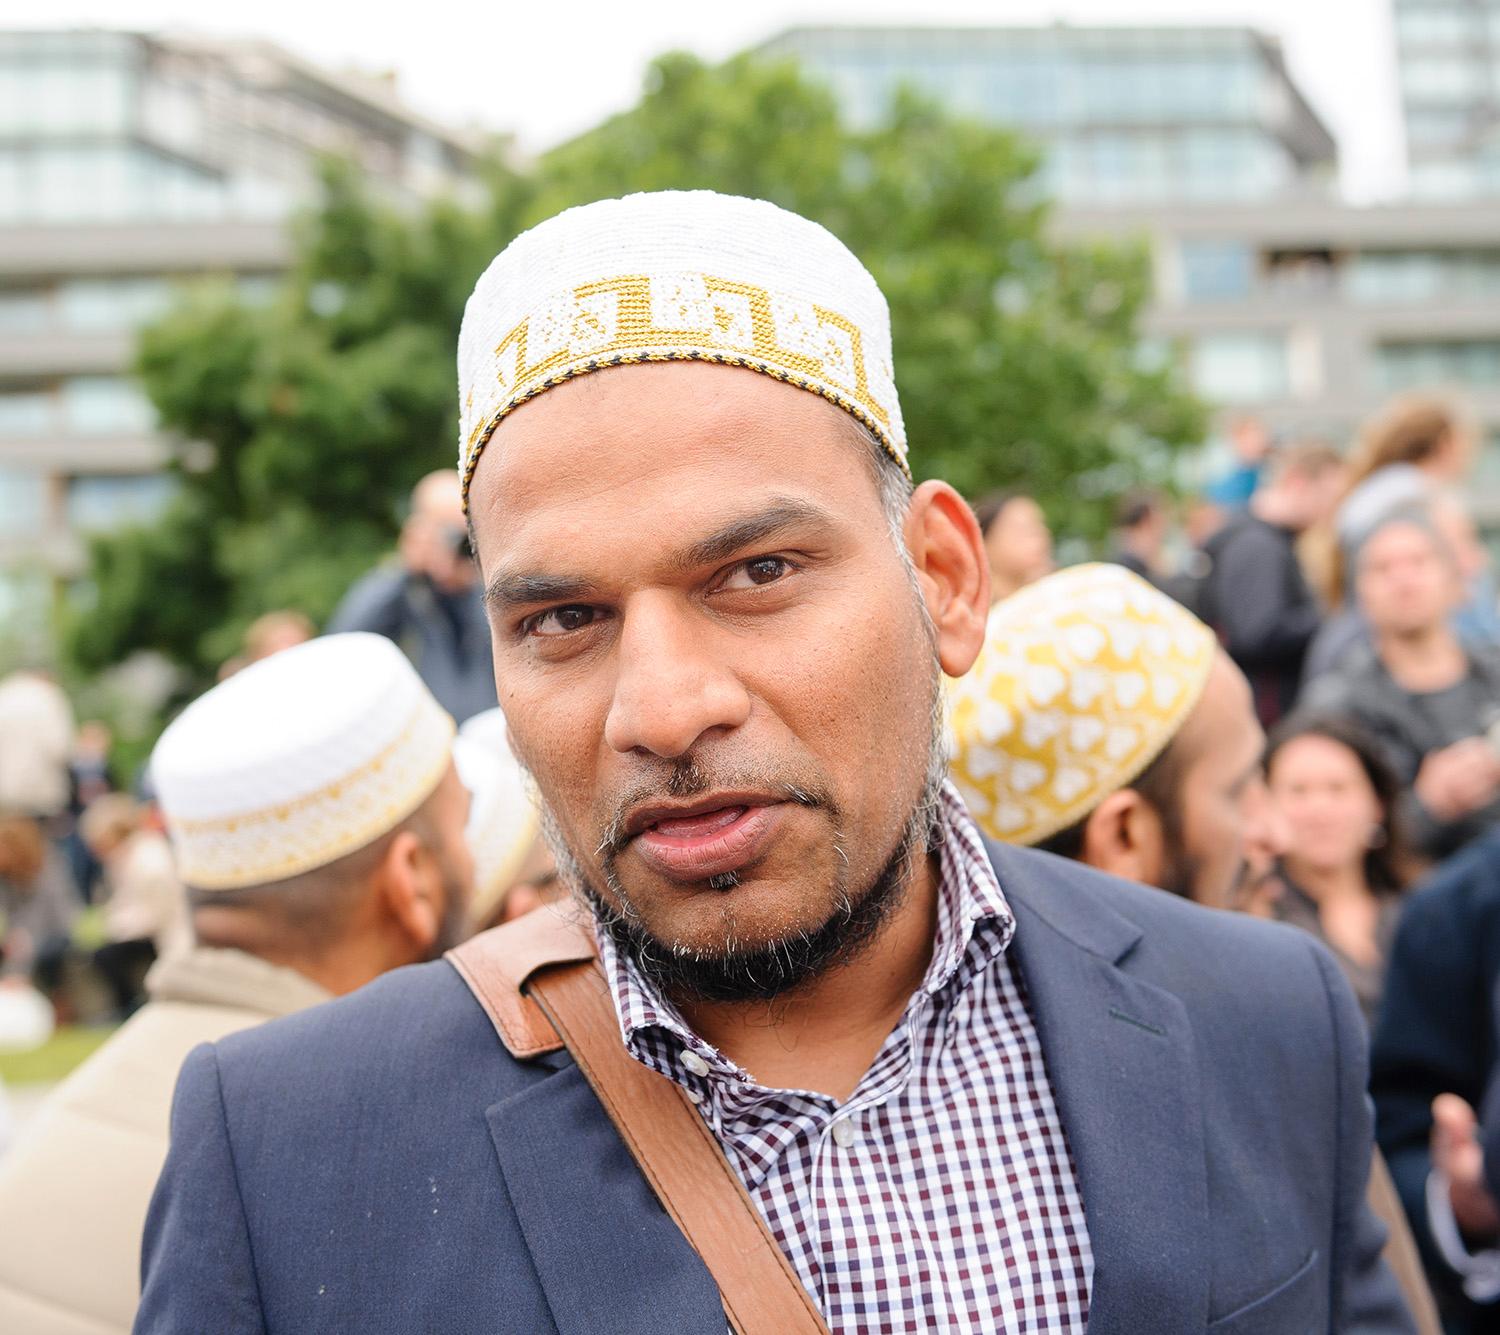 – Vi är hundra personer från min moské som kommit hit, sa Khozema, 38, från Northolt i nordvästra London.